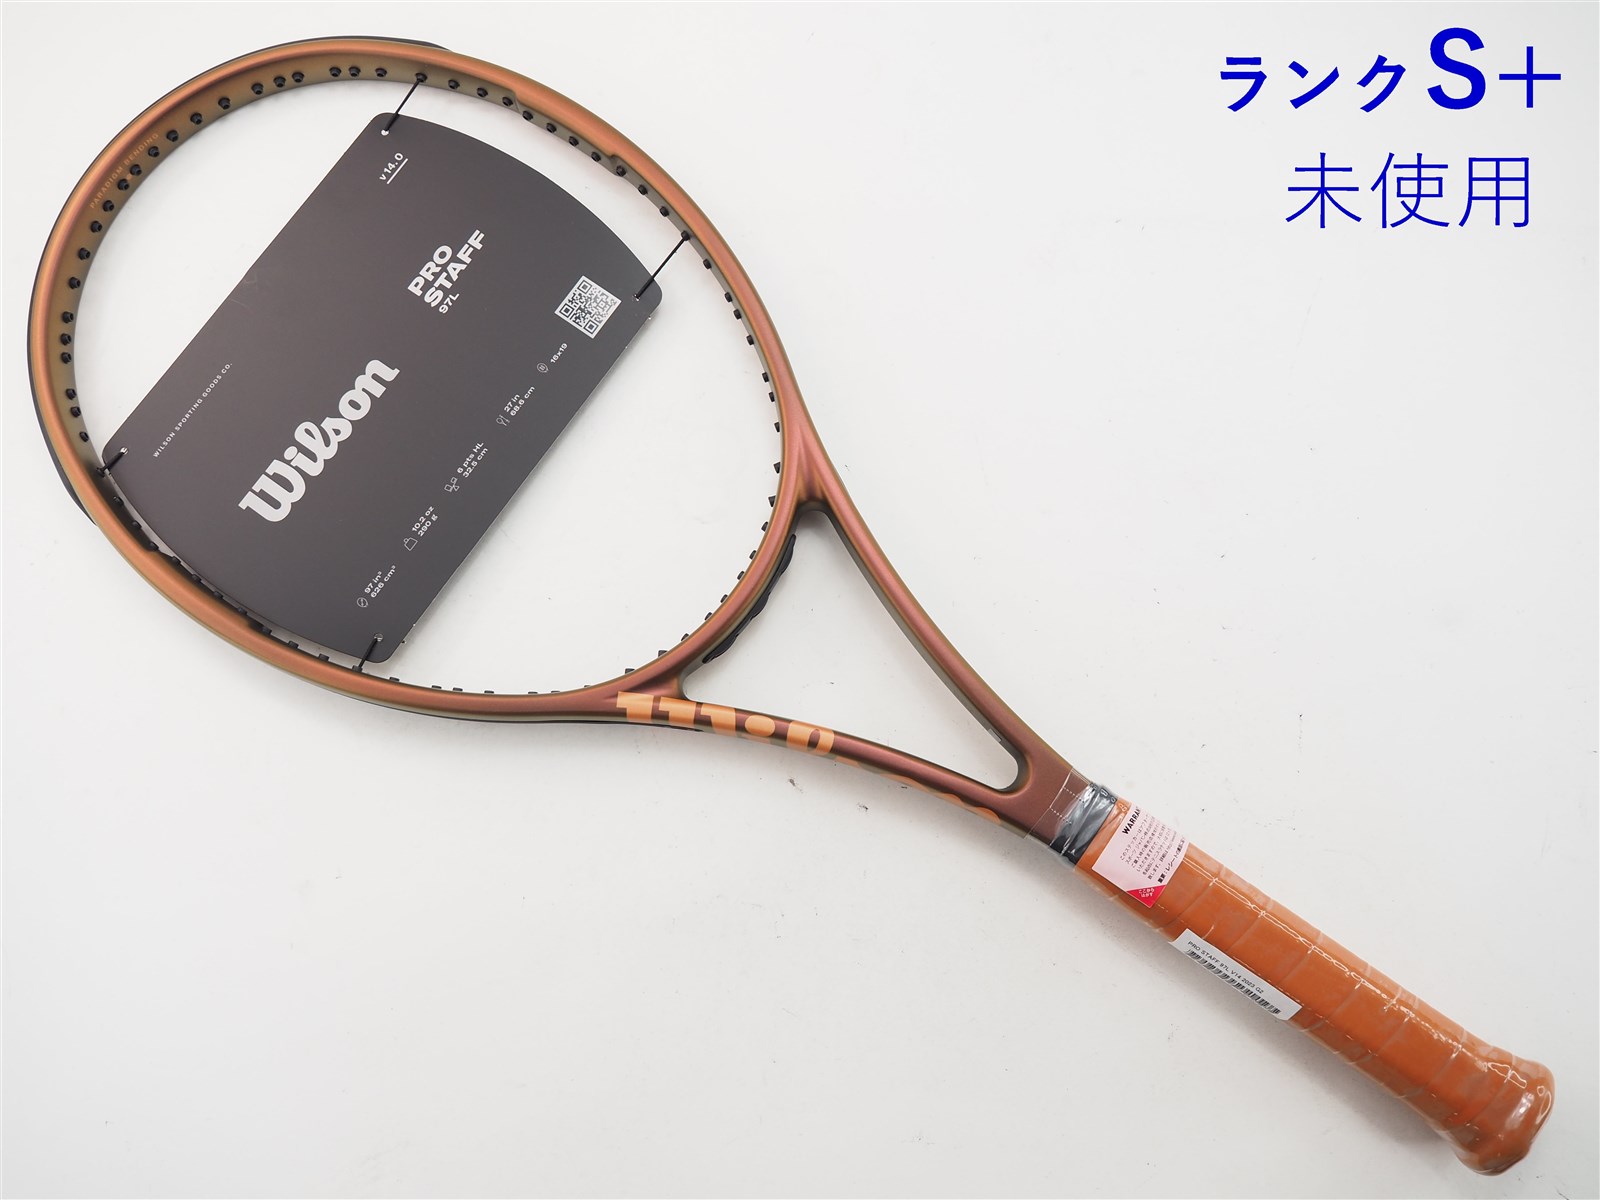 中古 テニスラケット ウィルソン プロ スタッフ 97エル バージョン13.0 ...